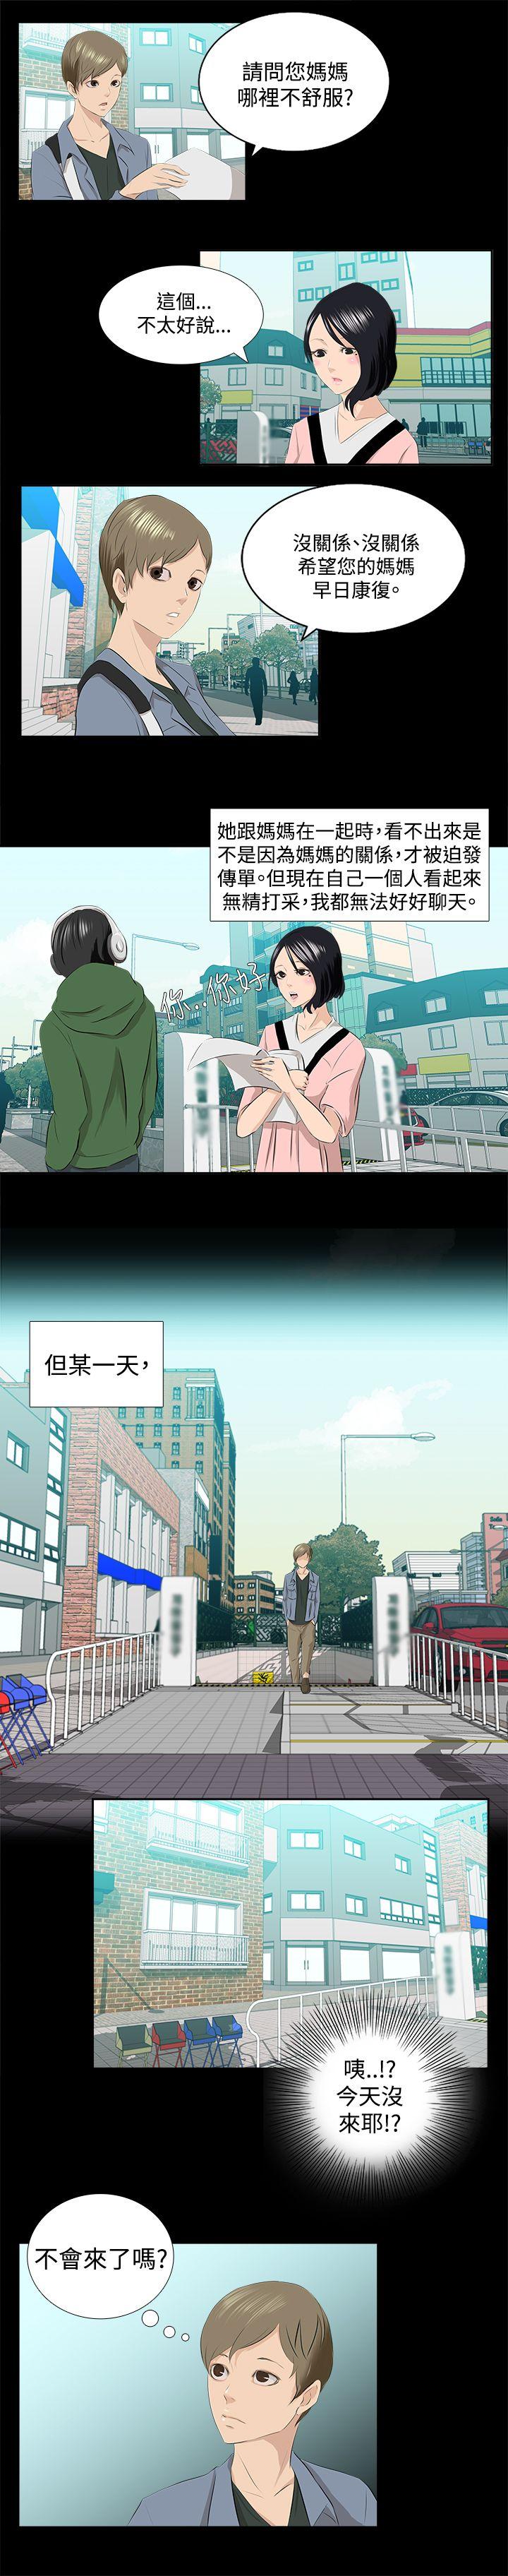 秘密Story  邪教之女(上) 漫画图片5.jpg